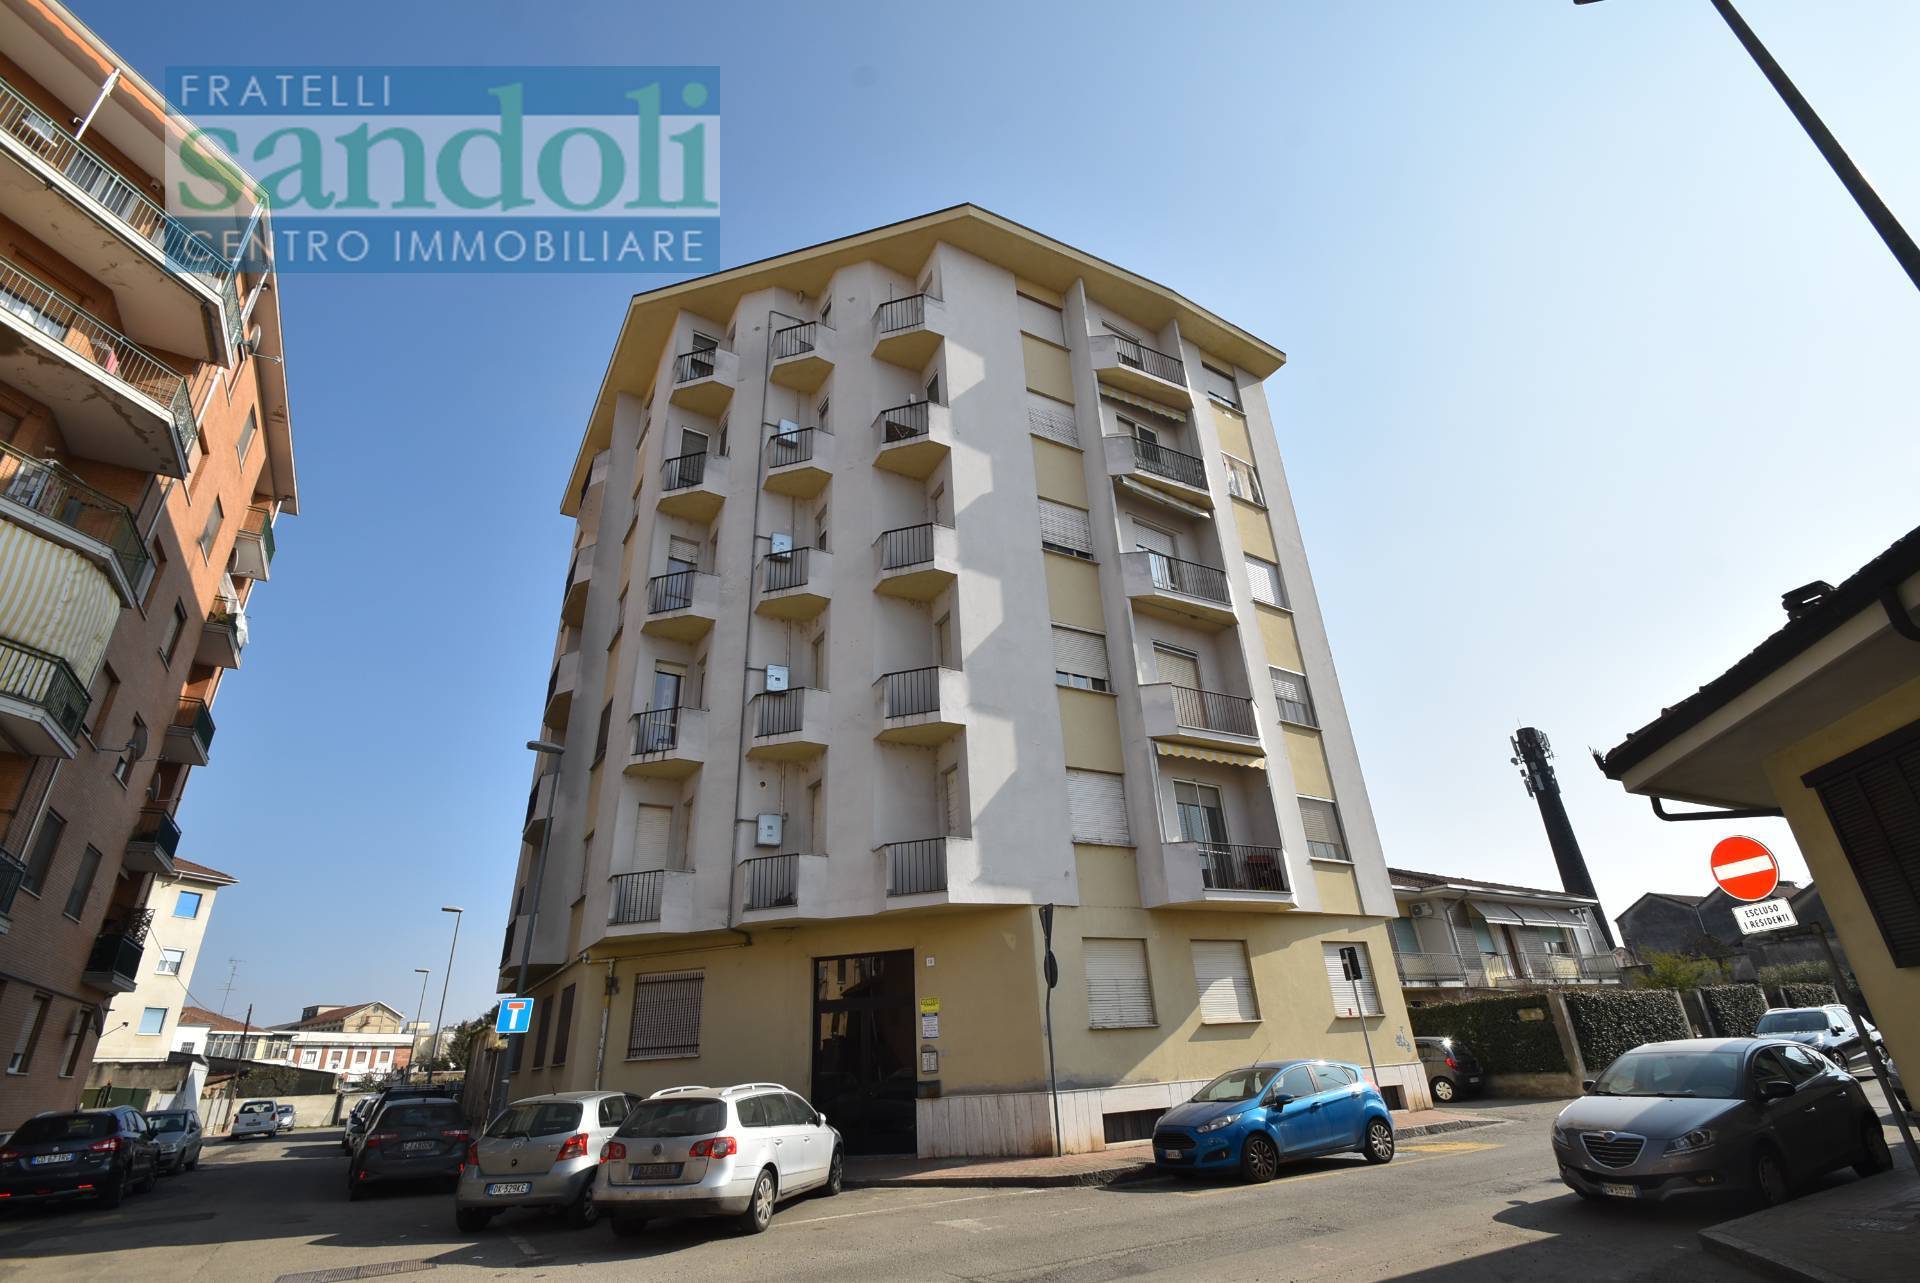 Appartamento in vendita a Vercelli, 3 locali, zona Località: Canad?, prezzo € 73.000 | PortaleAgenzieImmobiliari.it